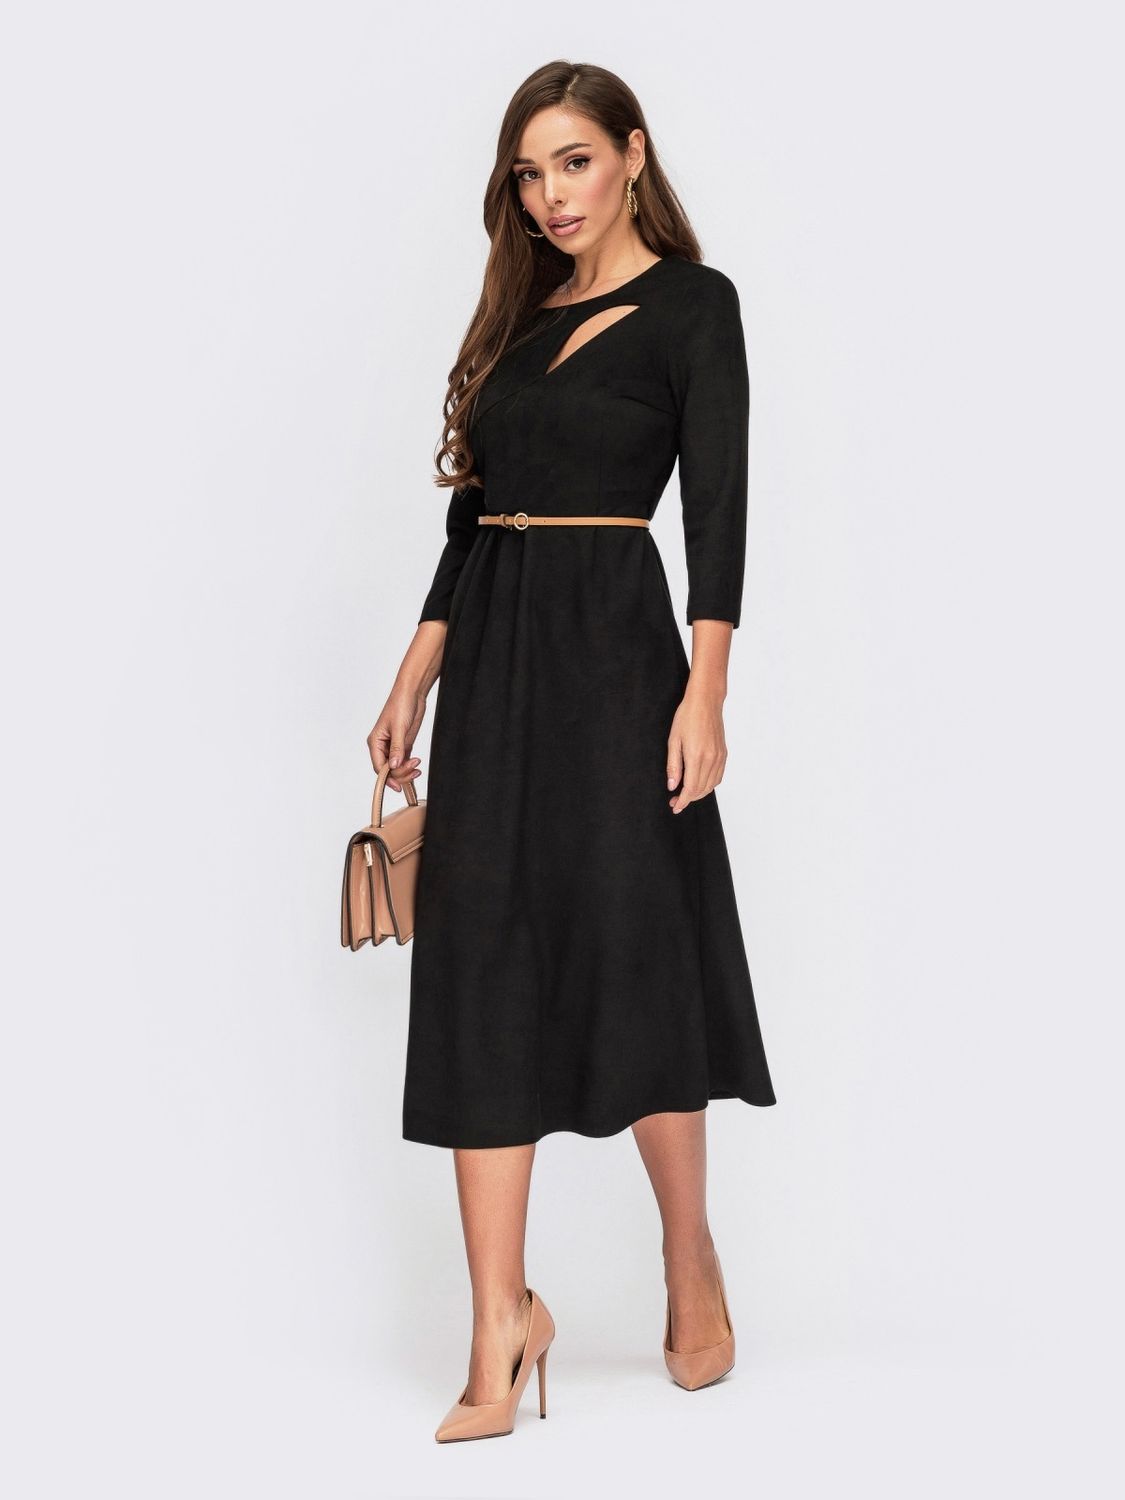 Черное замшевое платье с юбкой солнце-клеш - фото